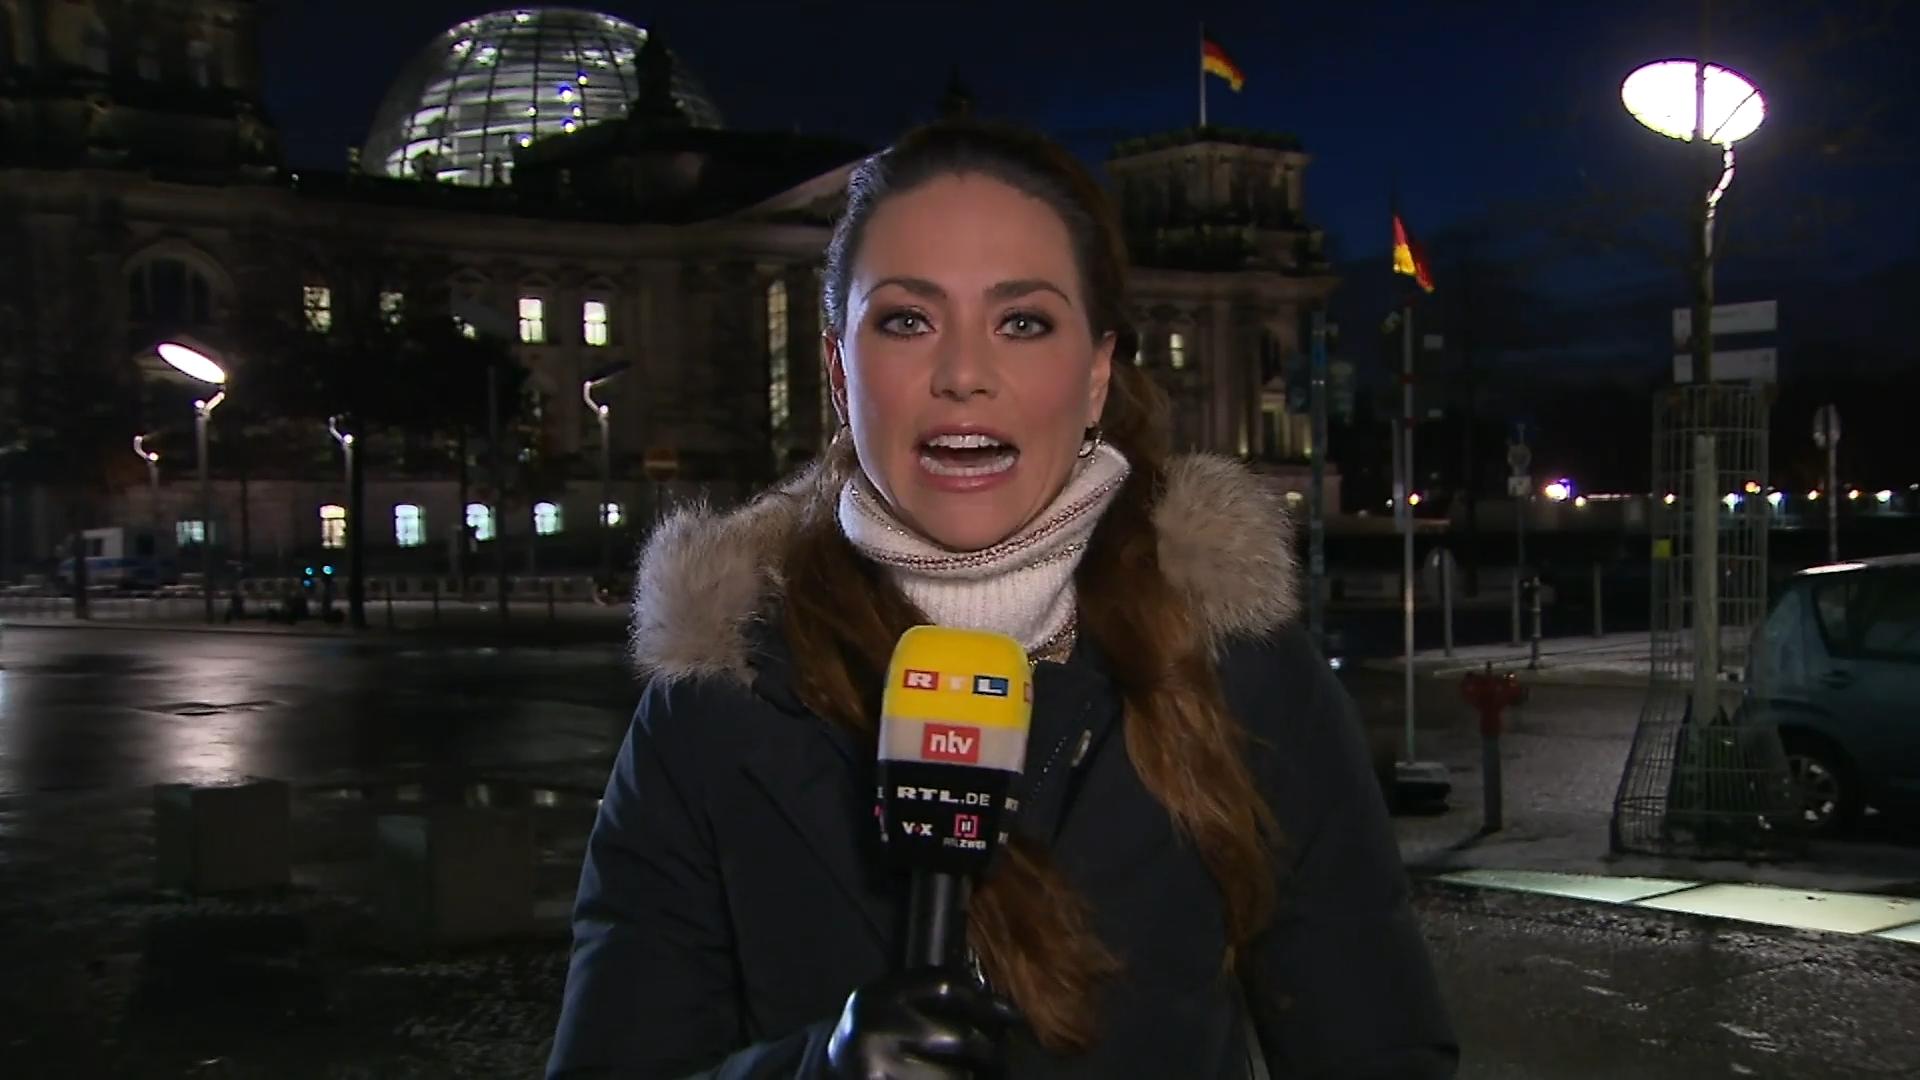 "Dieses Rennen ist völlig offen" Franca Lehfeldt über die CDU-Wahl am Samstag